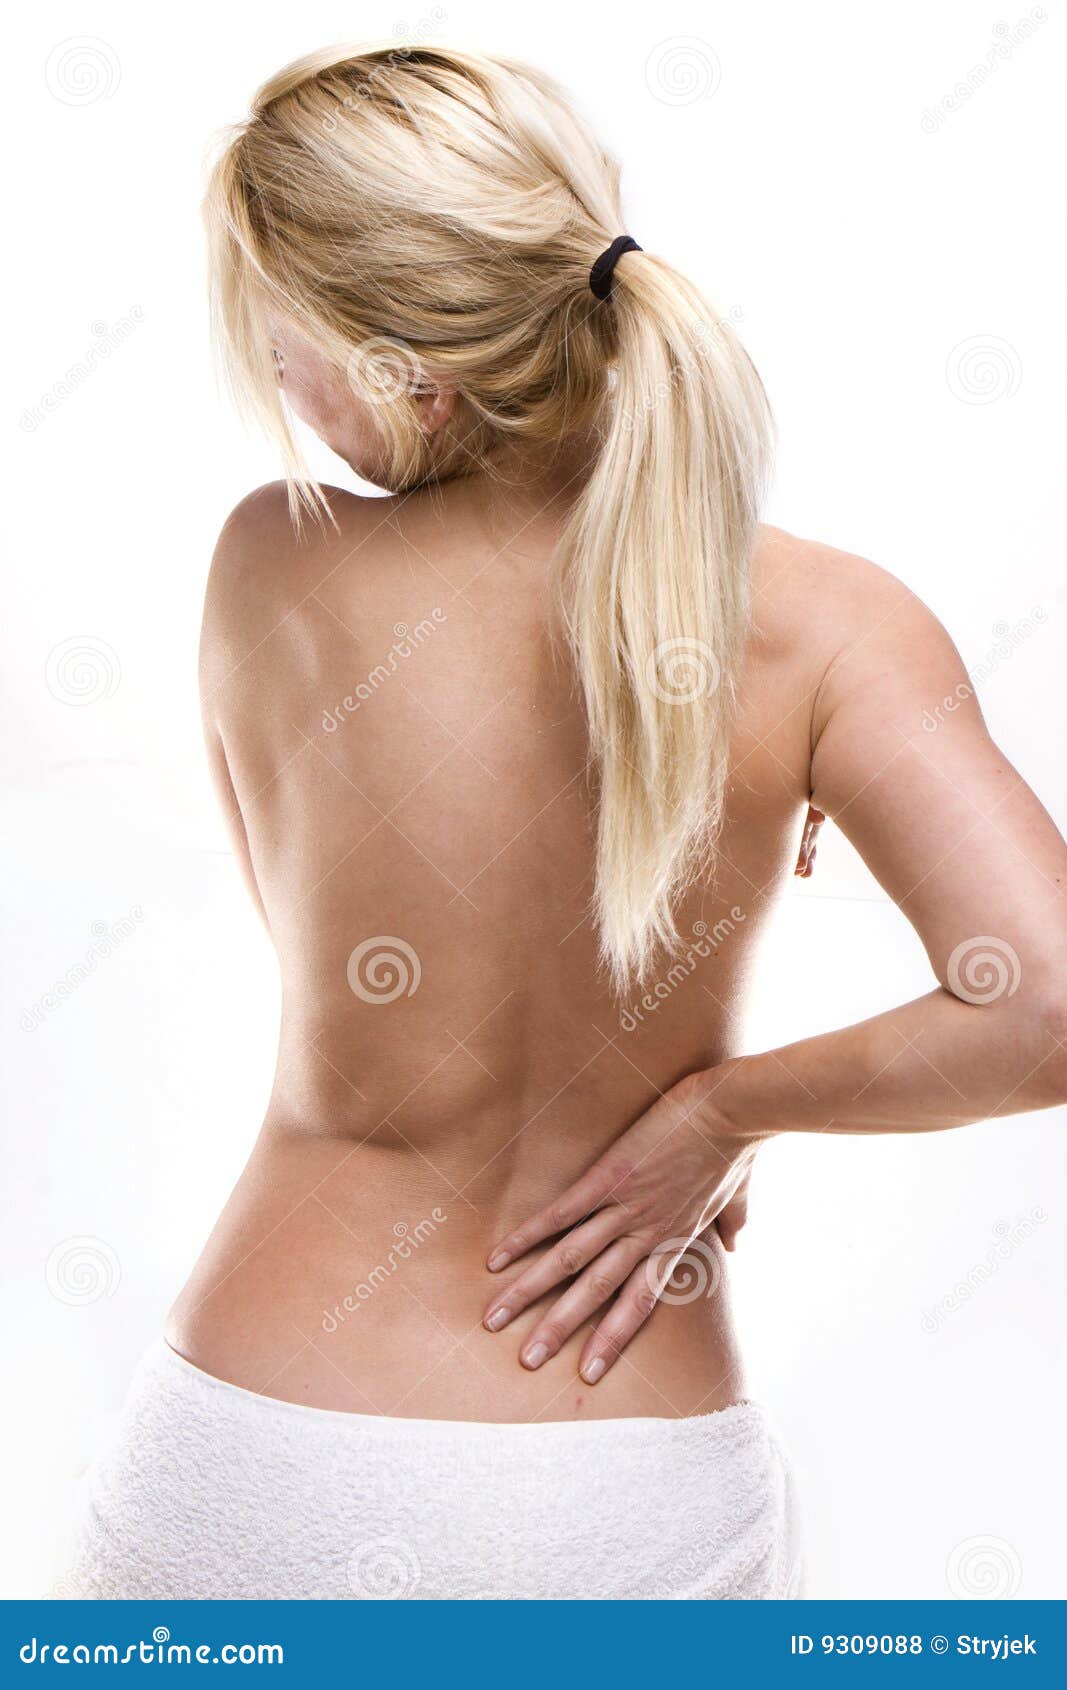 Поясница 18. Женская спина. Женщина со спины. Здоровая женская спина. Поясница фото.